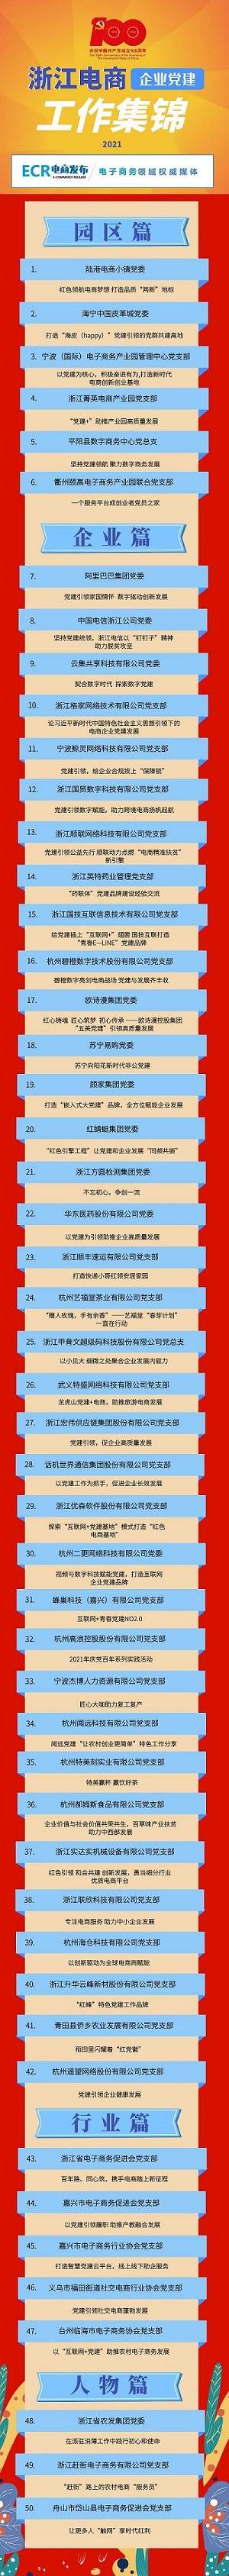 2021浙江电商企业党建工作集锦（50个案例）-识物网 - 数字新消费品牌知识门户